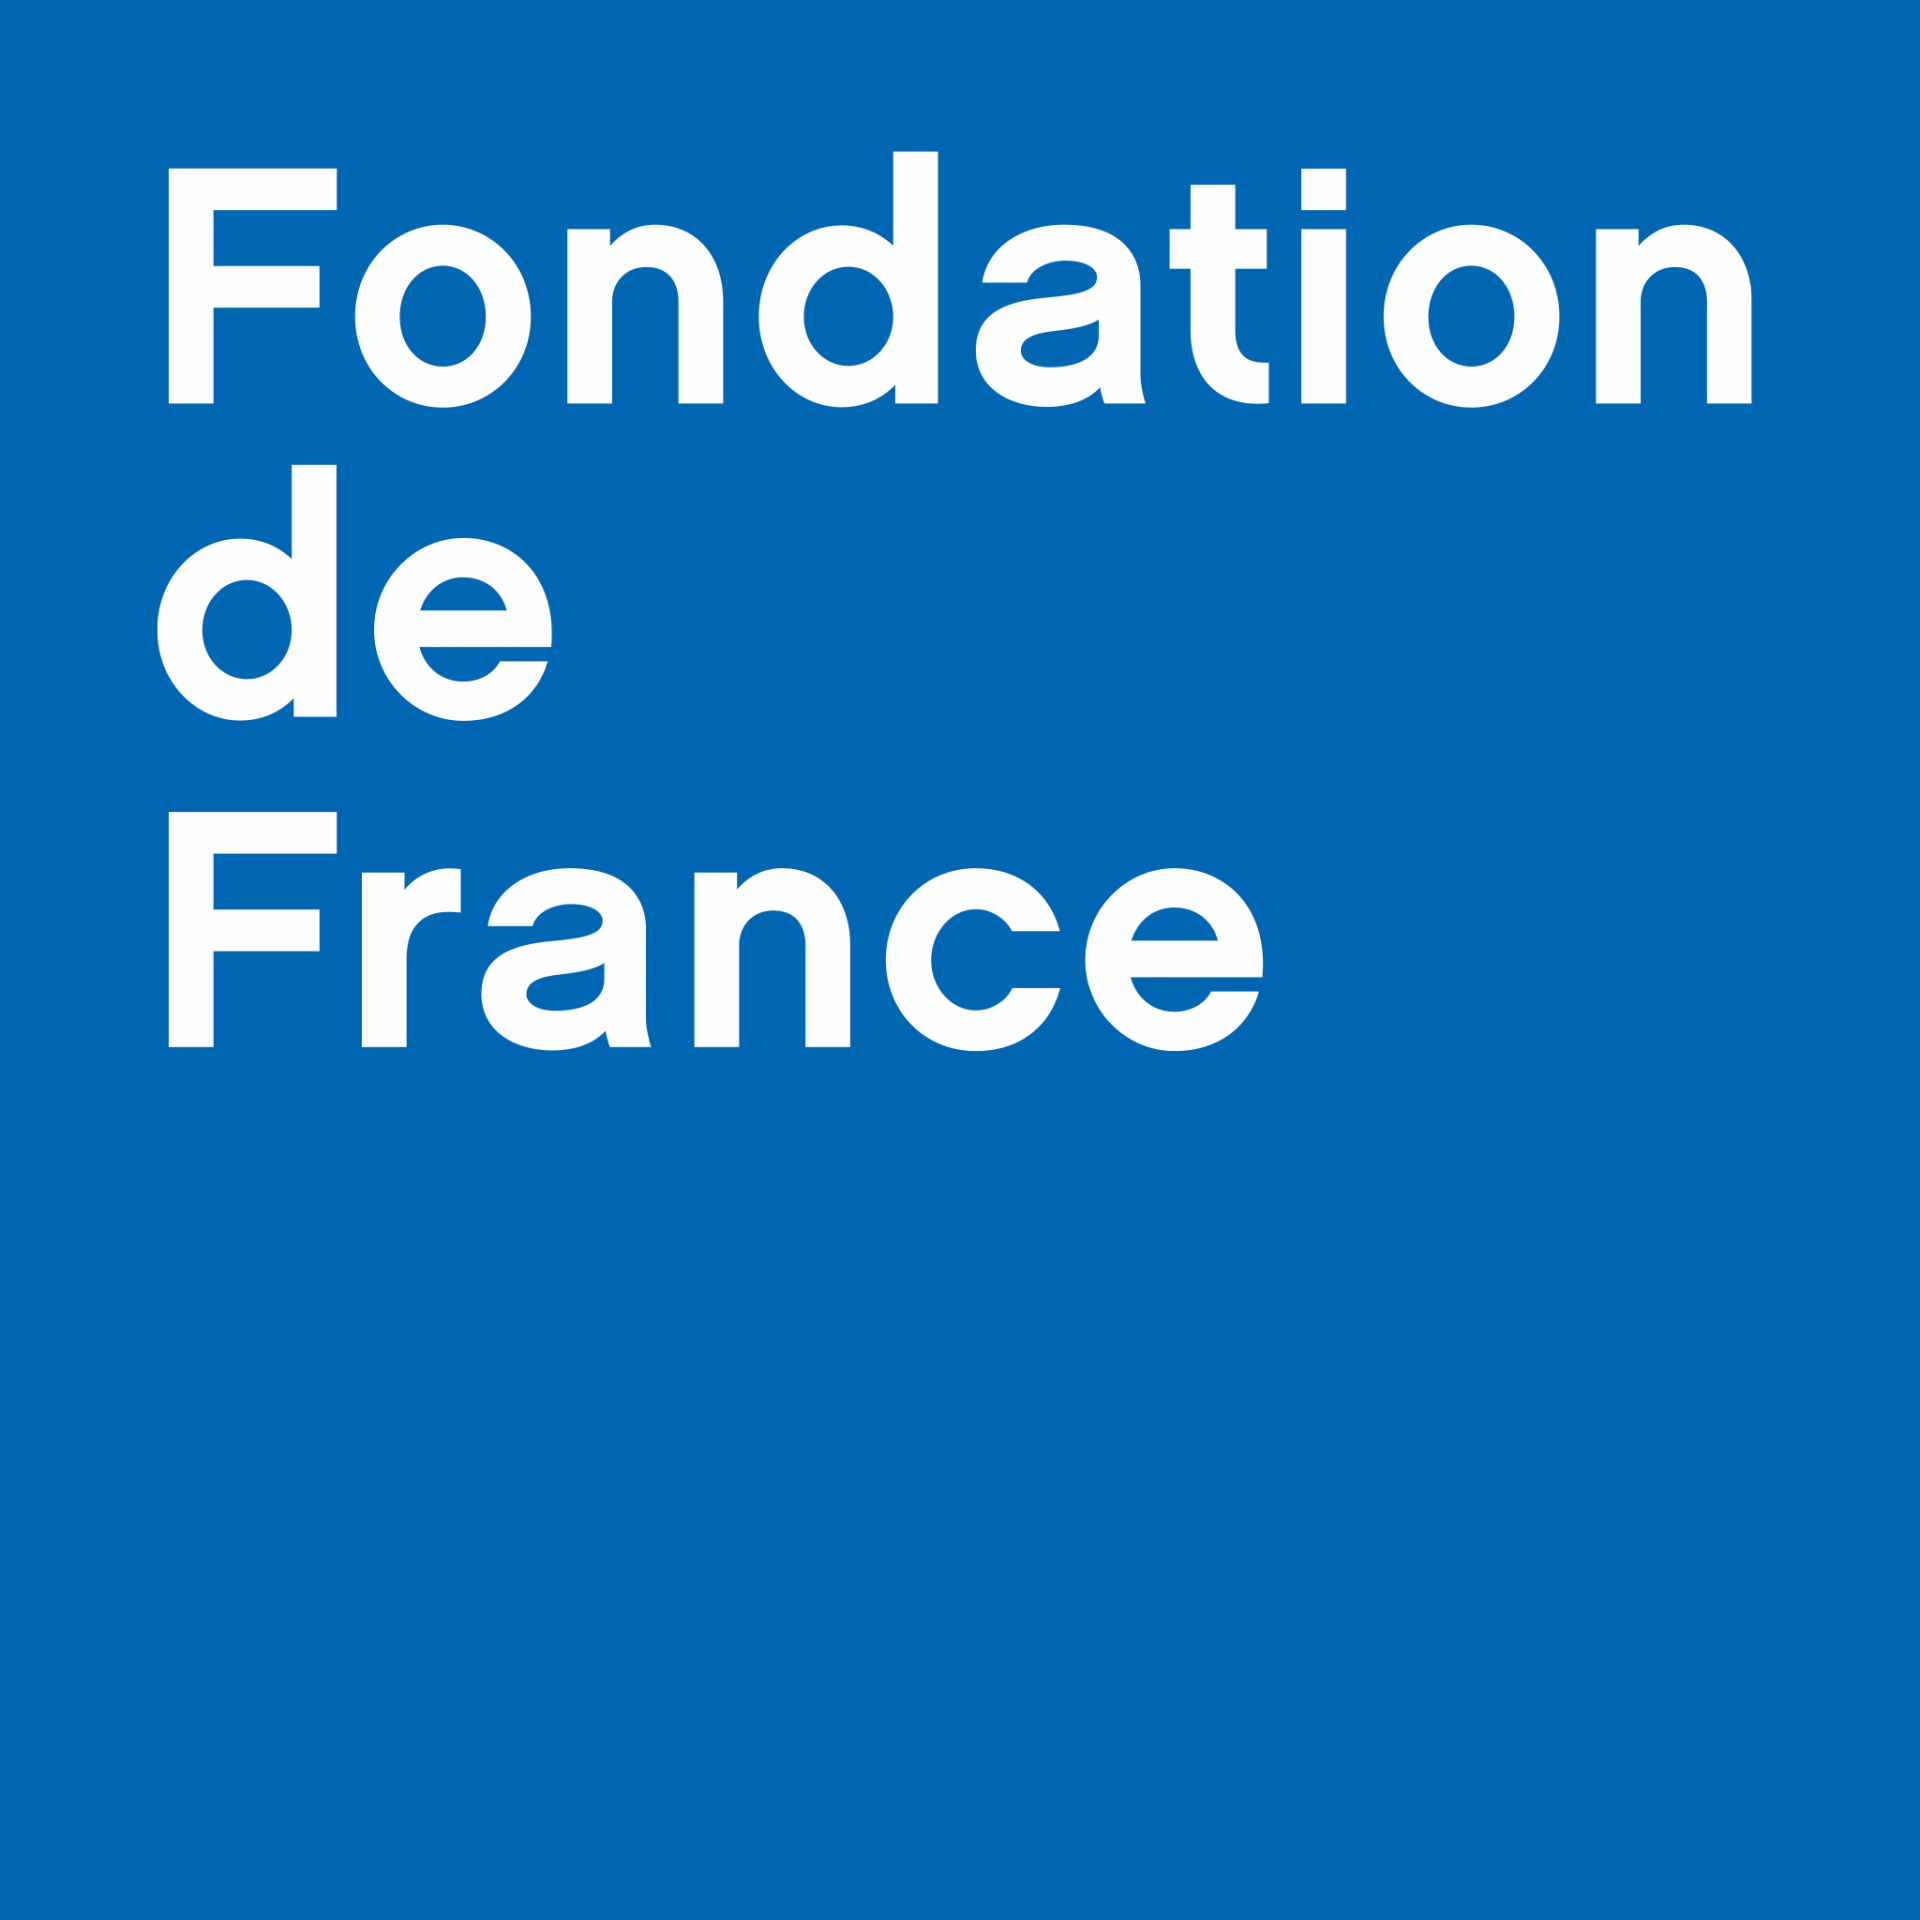 Fondation de france svg